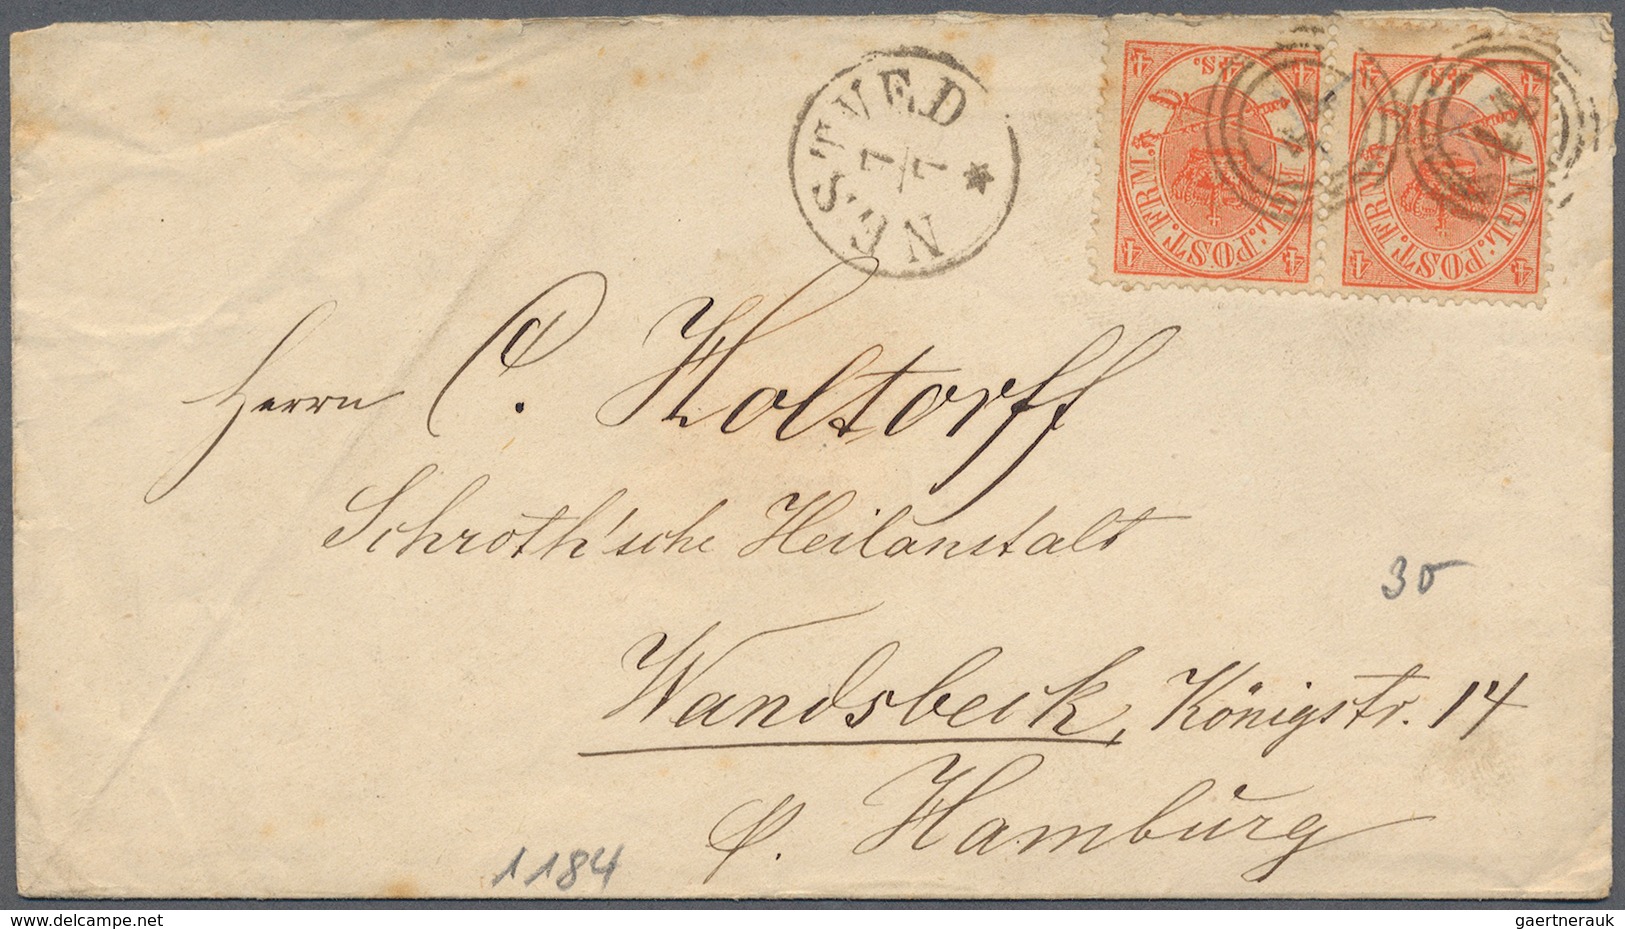 26233 Dänemark: 1877, ab, interessnte Partie von ca. 177 Belegen, dabei frankierte Brief nach Thailand, in